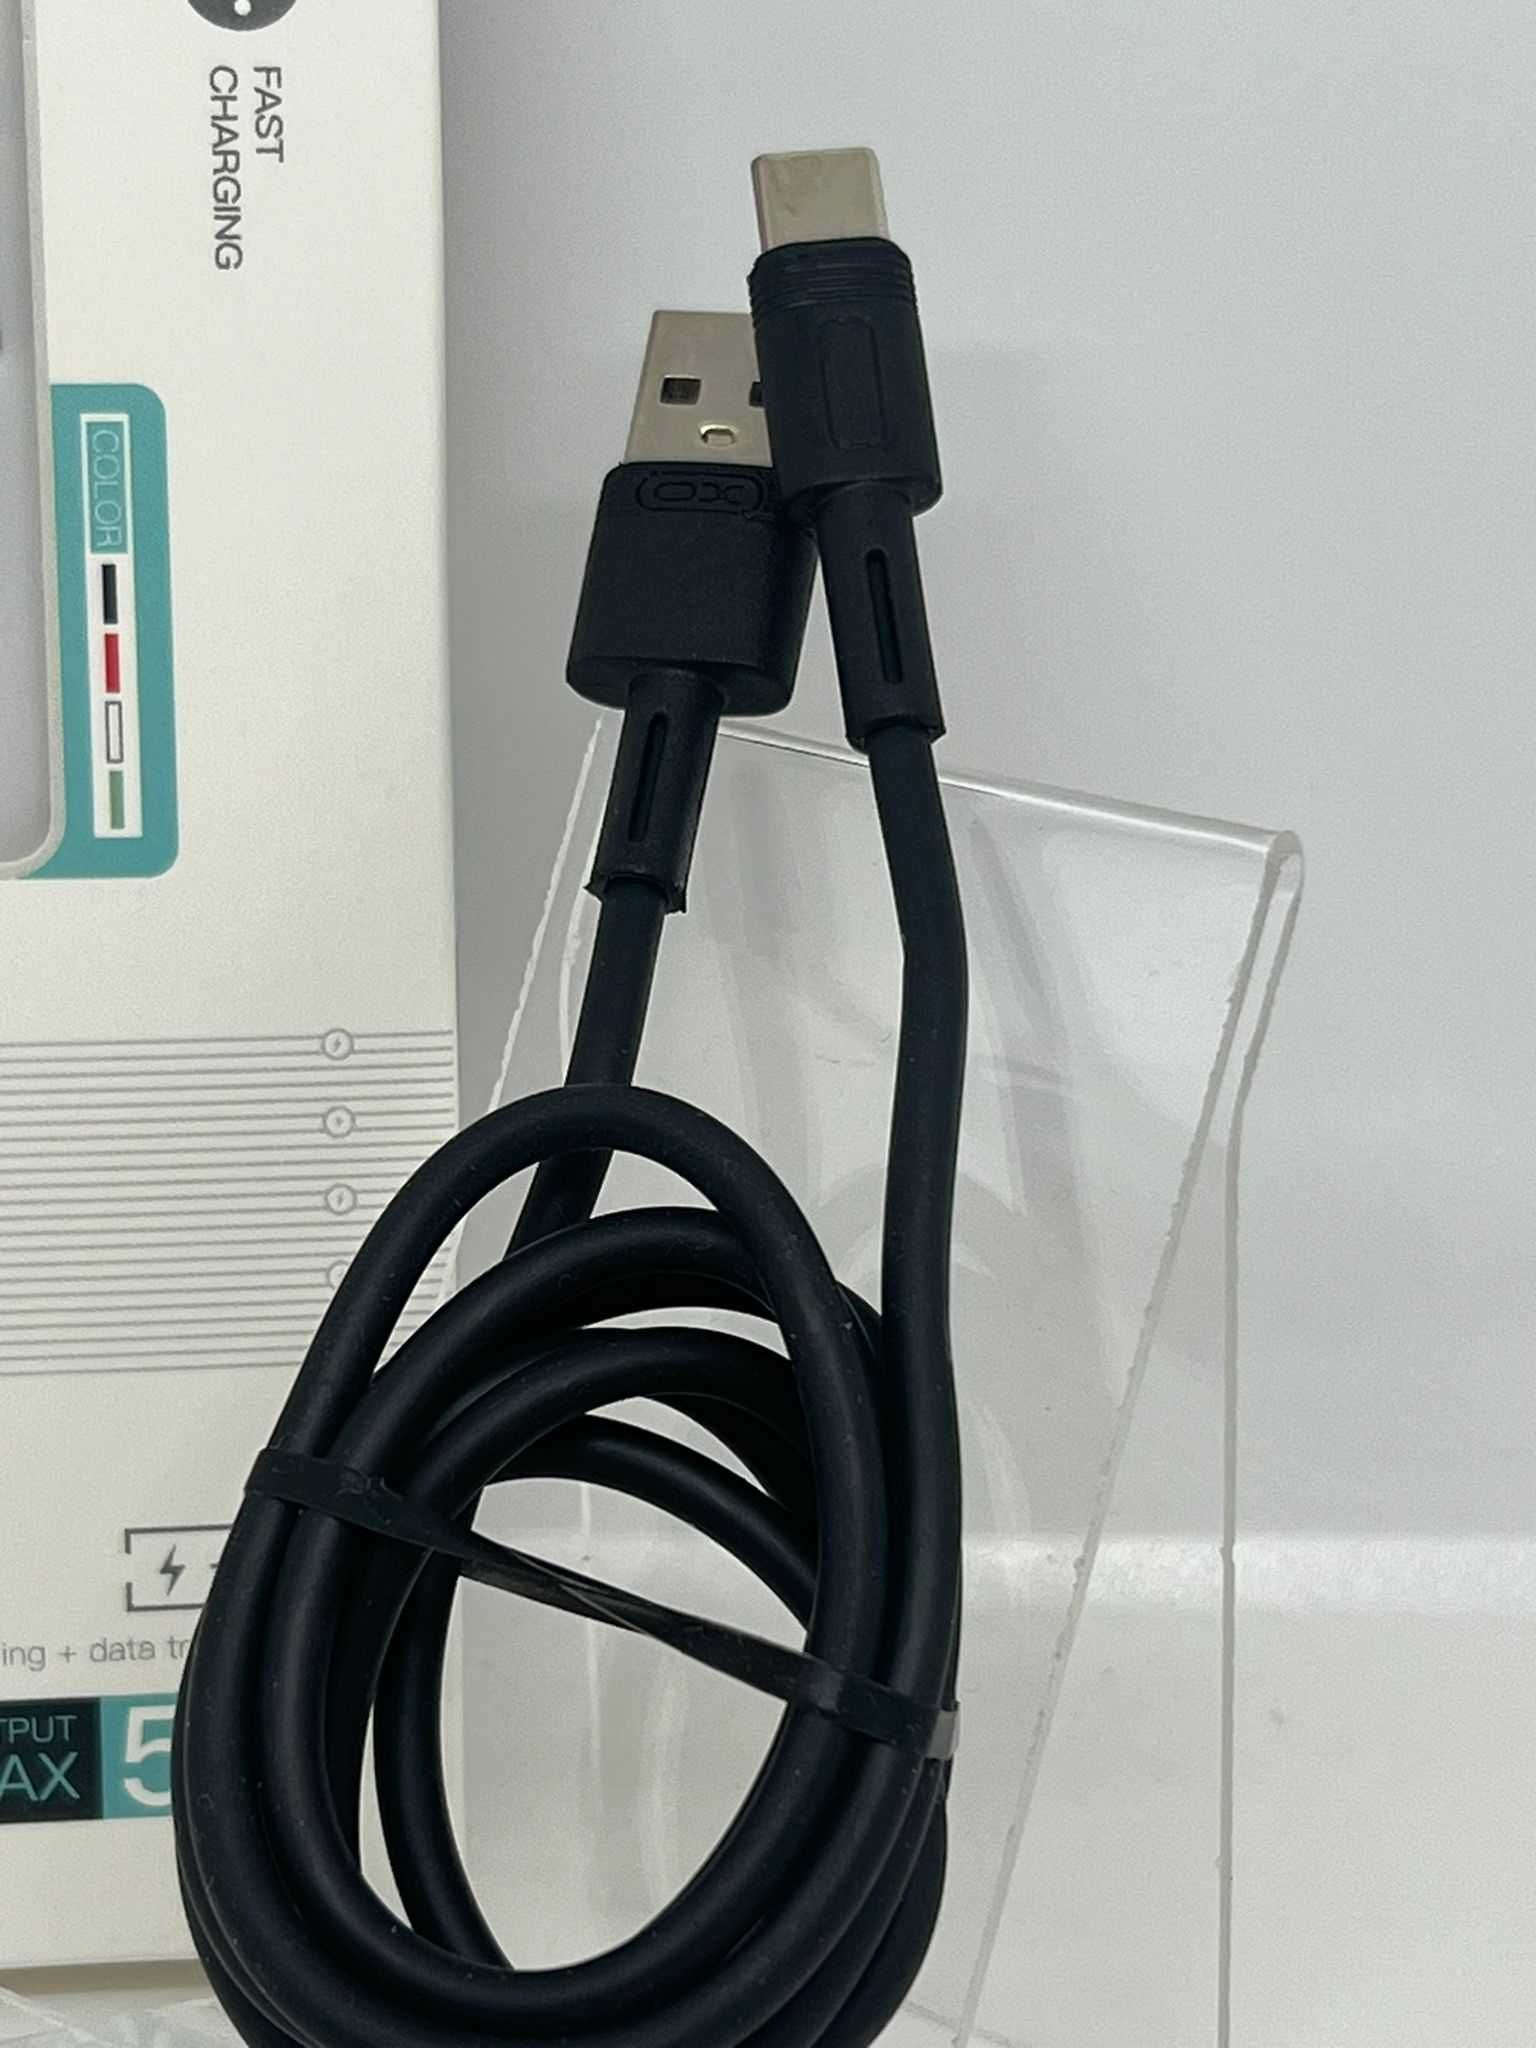 XO kabel NB-Q166 USB - USB-C 1,0 m 5A czarny